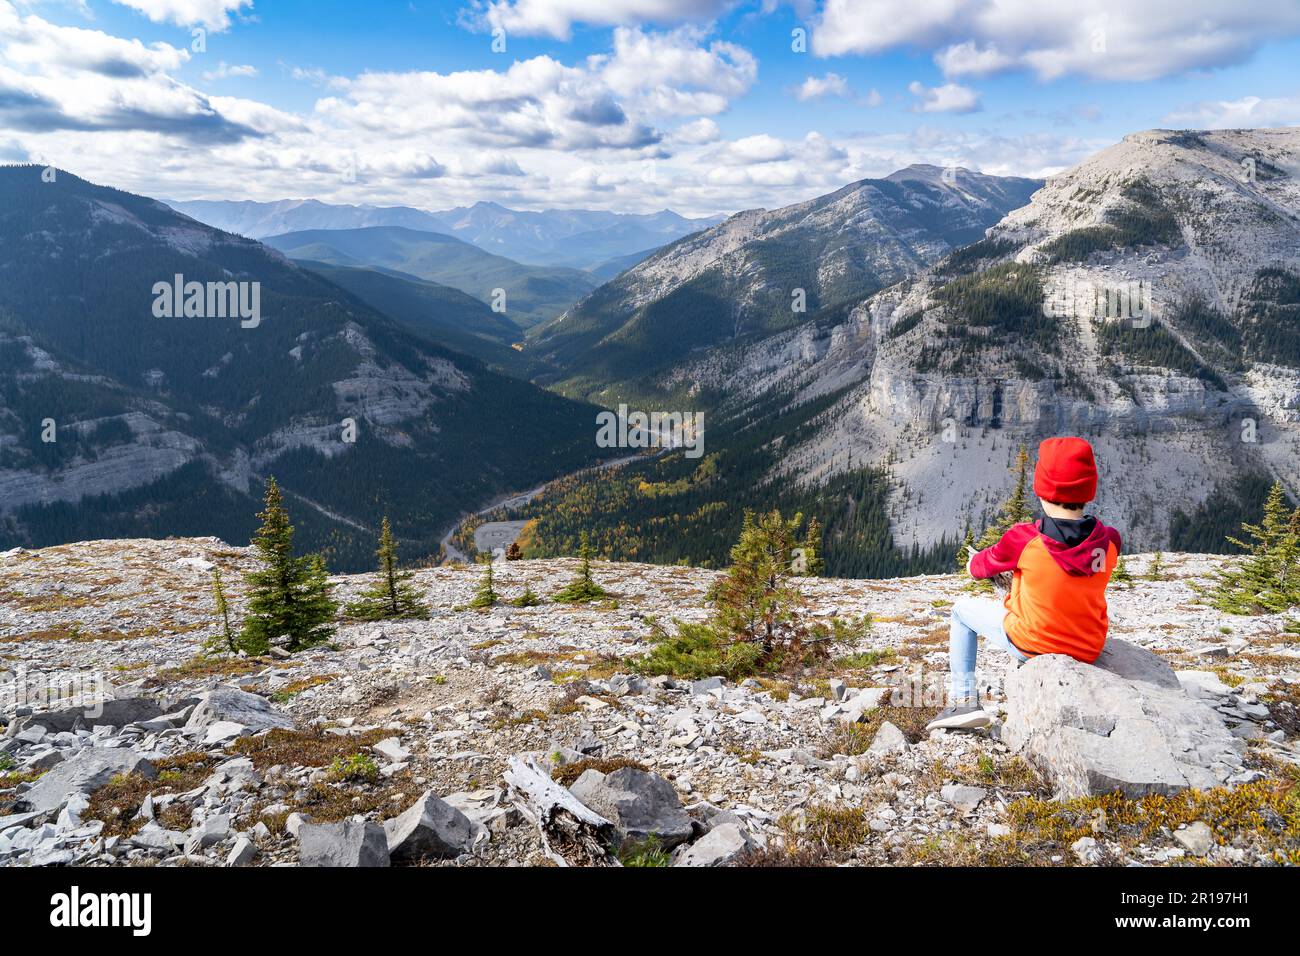 Jeune garçon assis sur un rocher surplombant une montagne vally dans les Rocheuses canadiennes à Moose Mountain Kananaskis Alberta. Banque D'Images